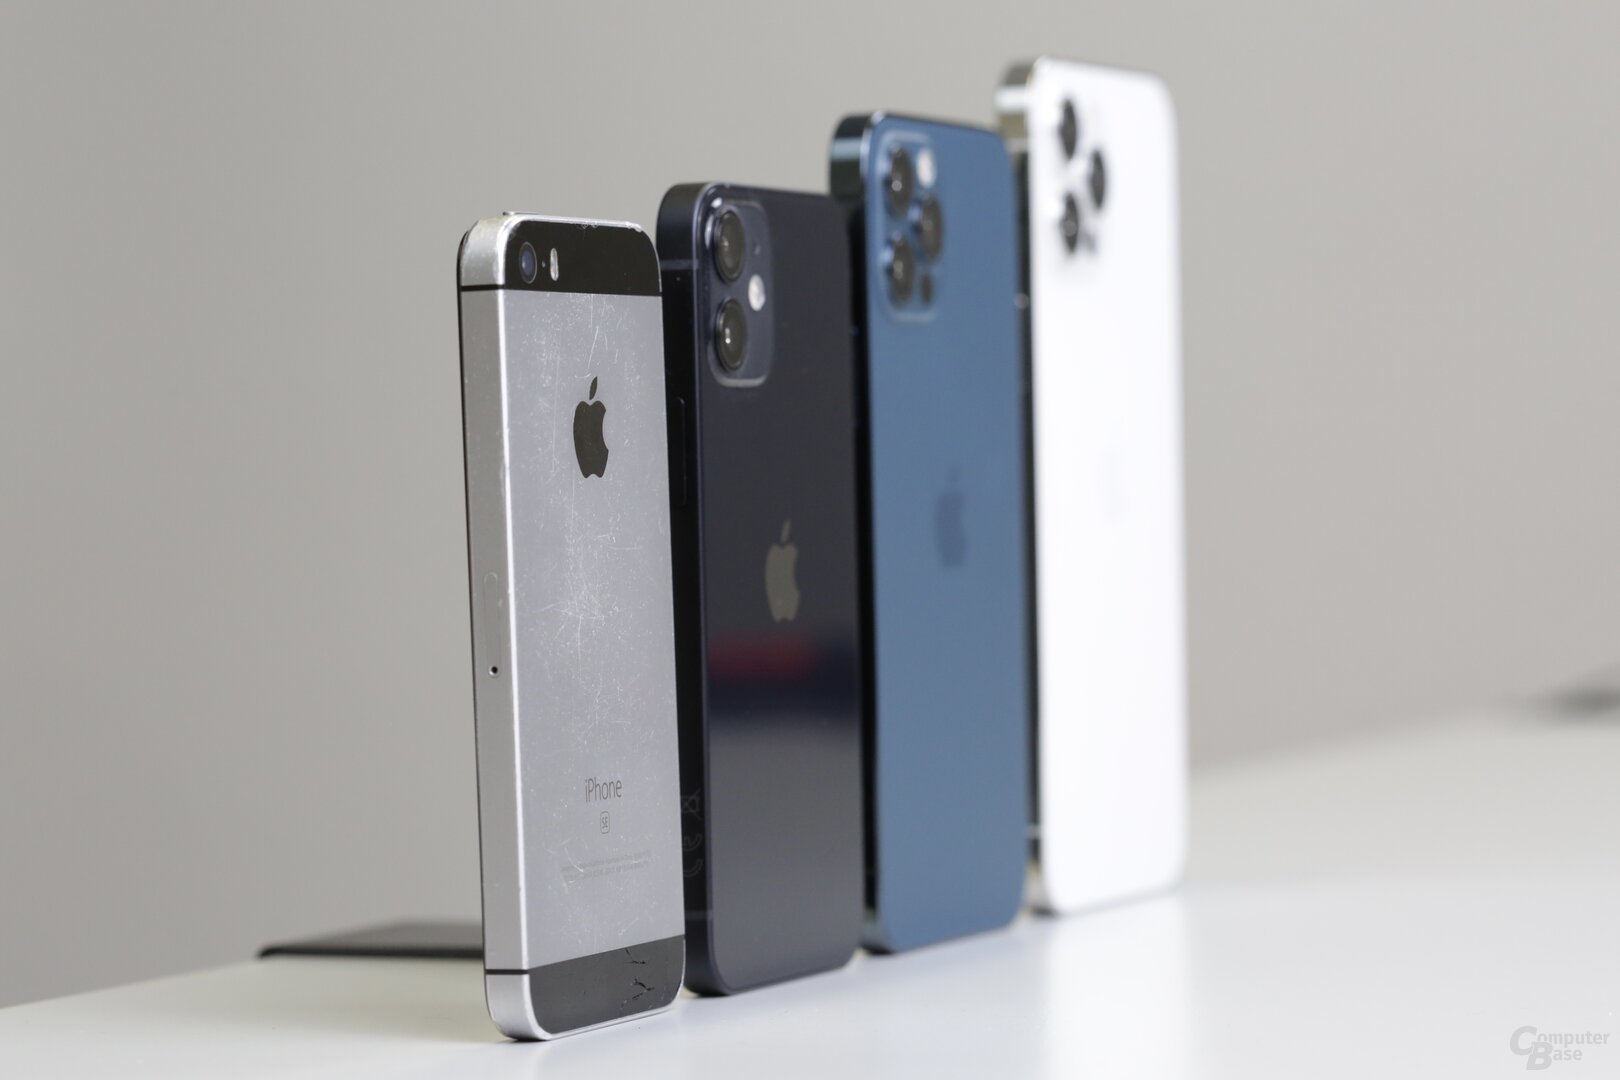 iPhone SE im Line-Up  mit iPhone 12, iPhone 12 Pro und iPhone 12 Pro Max